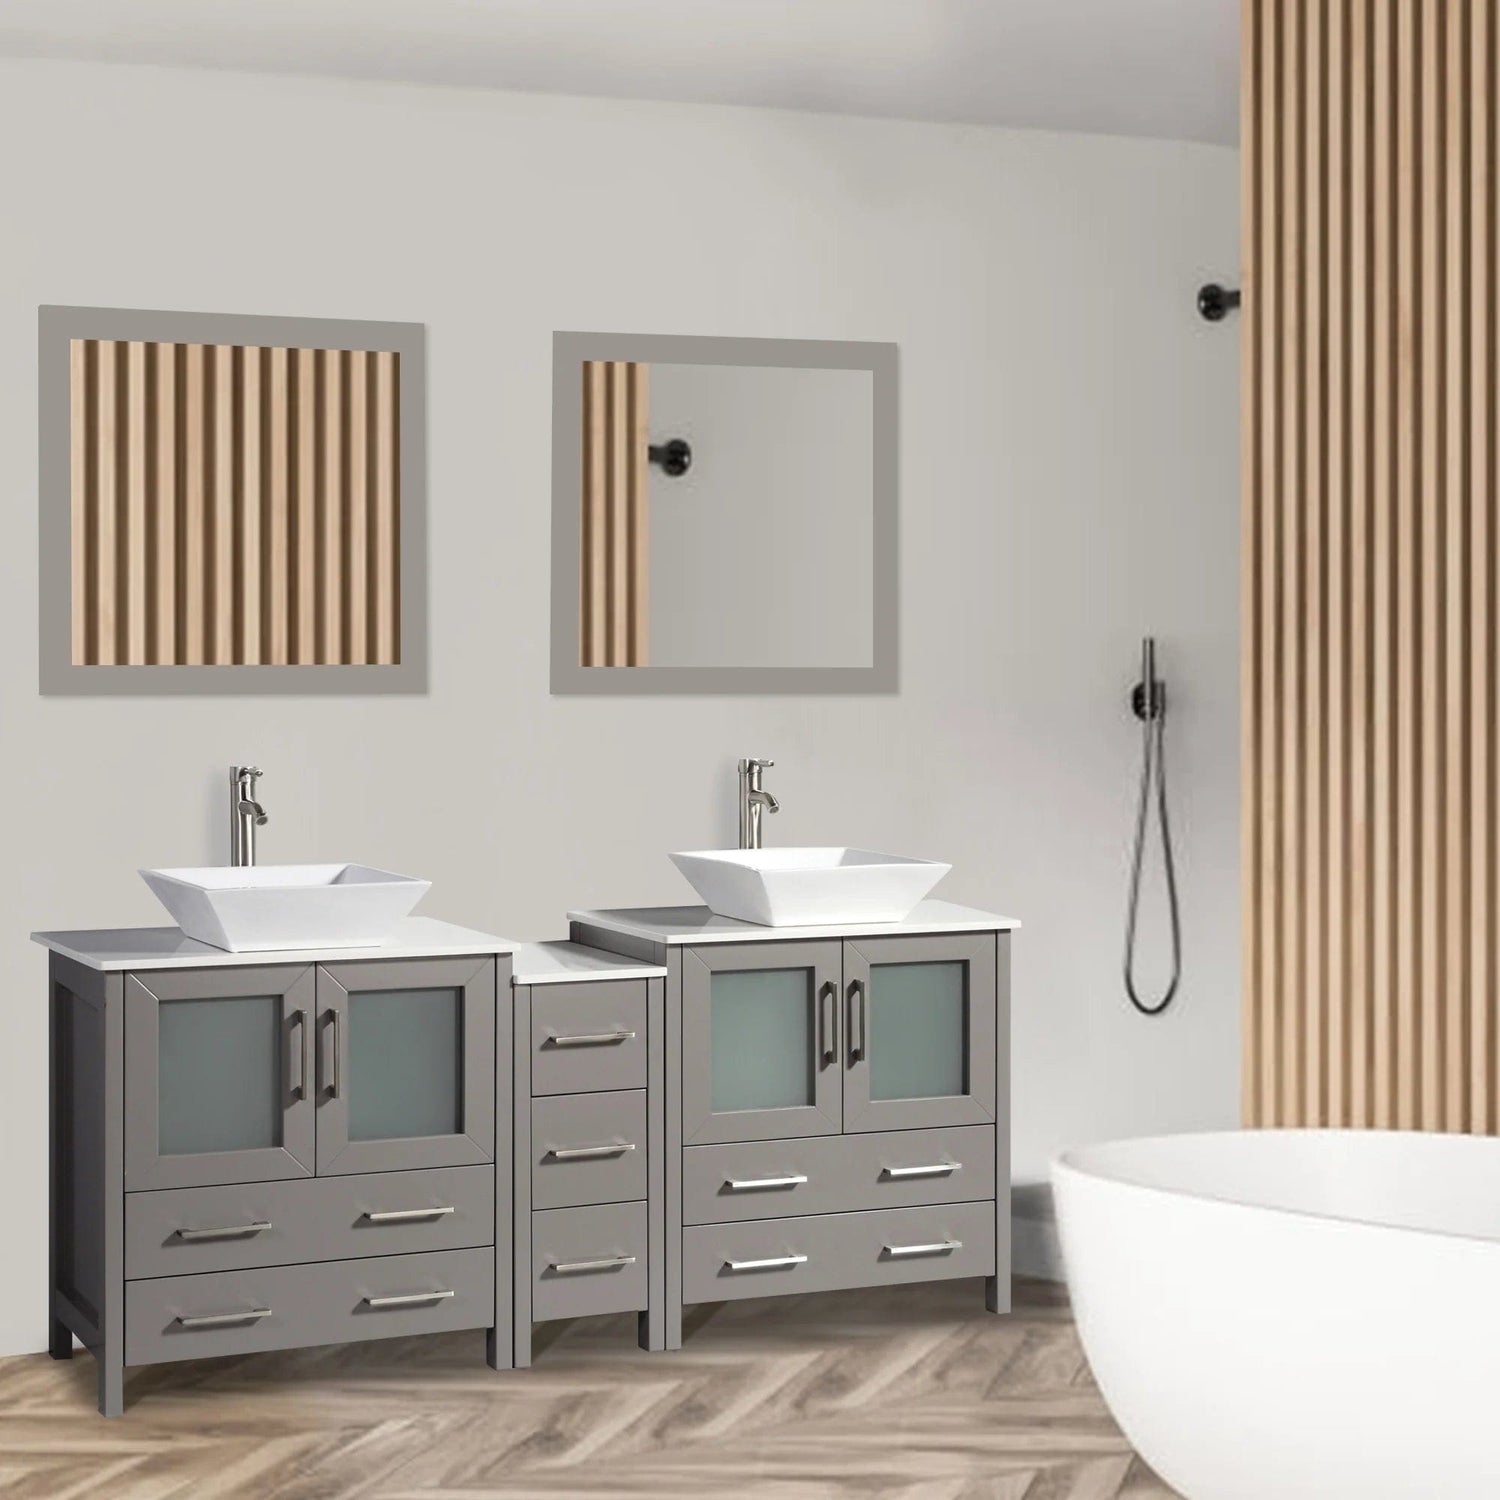 72 in. Double Sink Bathroom Vanity Combo Set in Gray